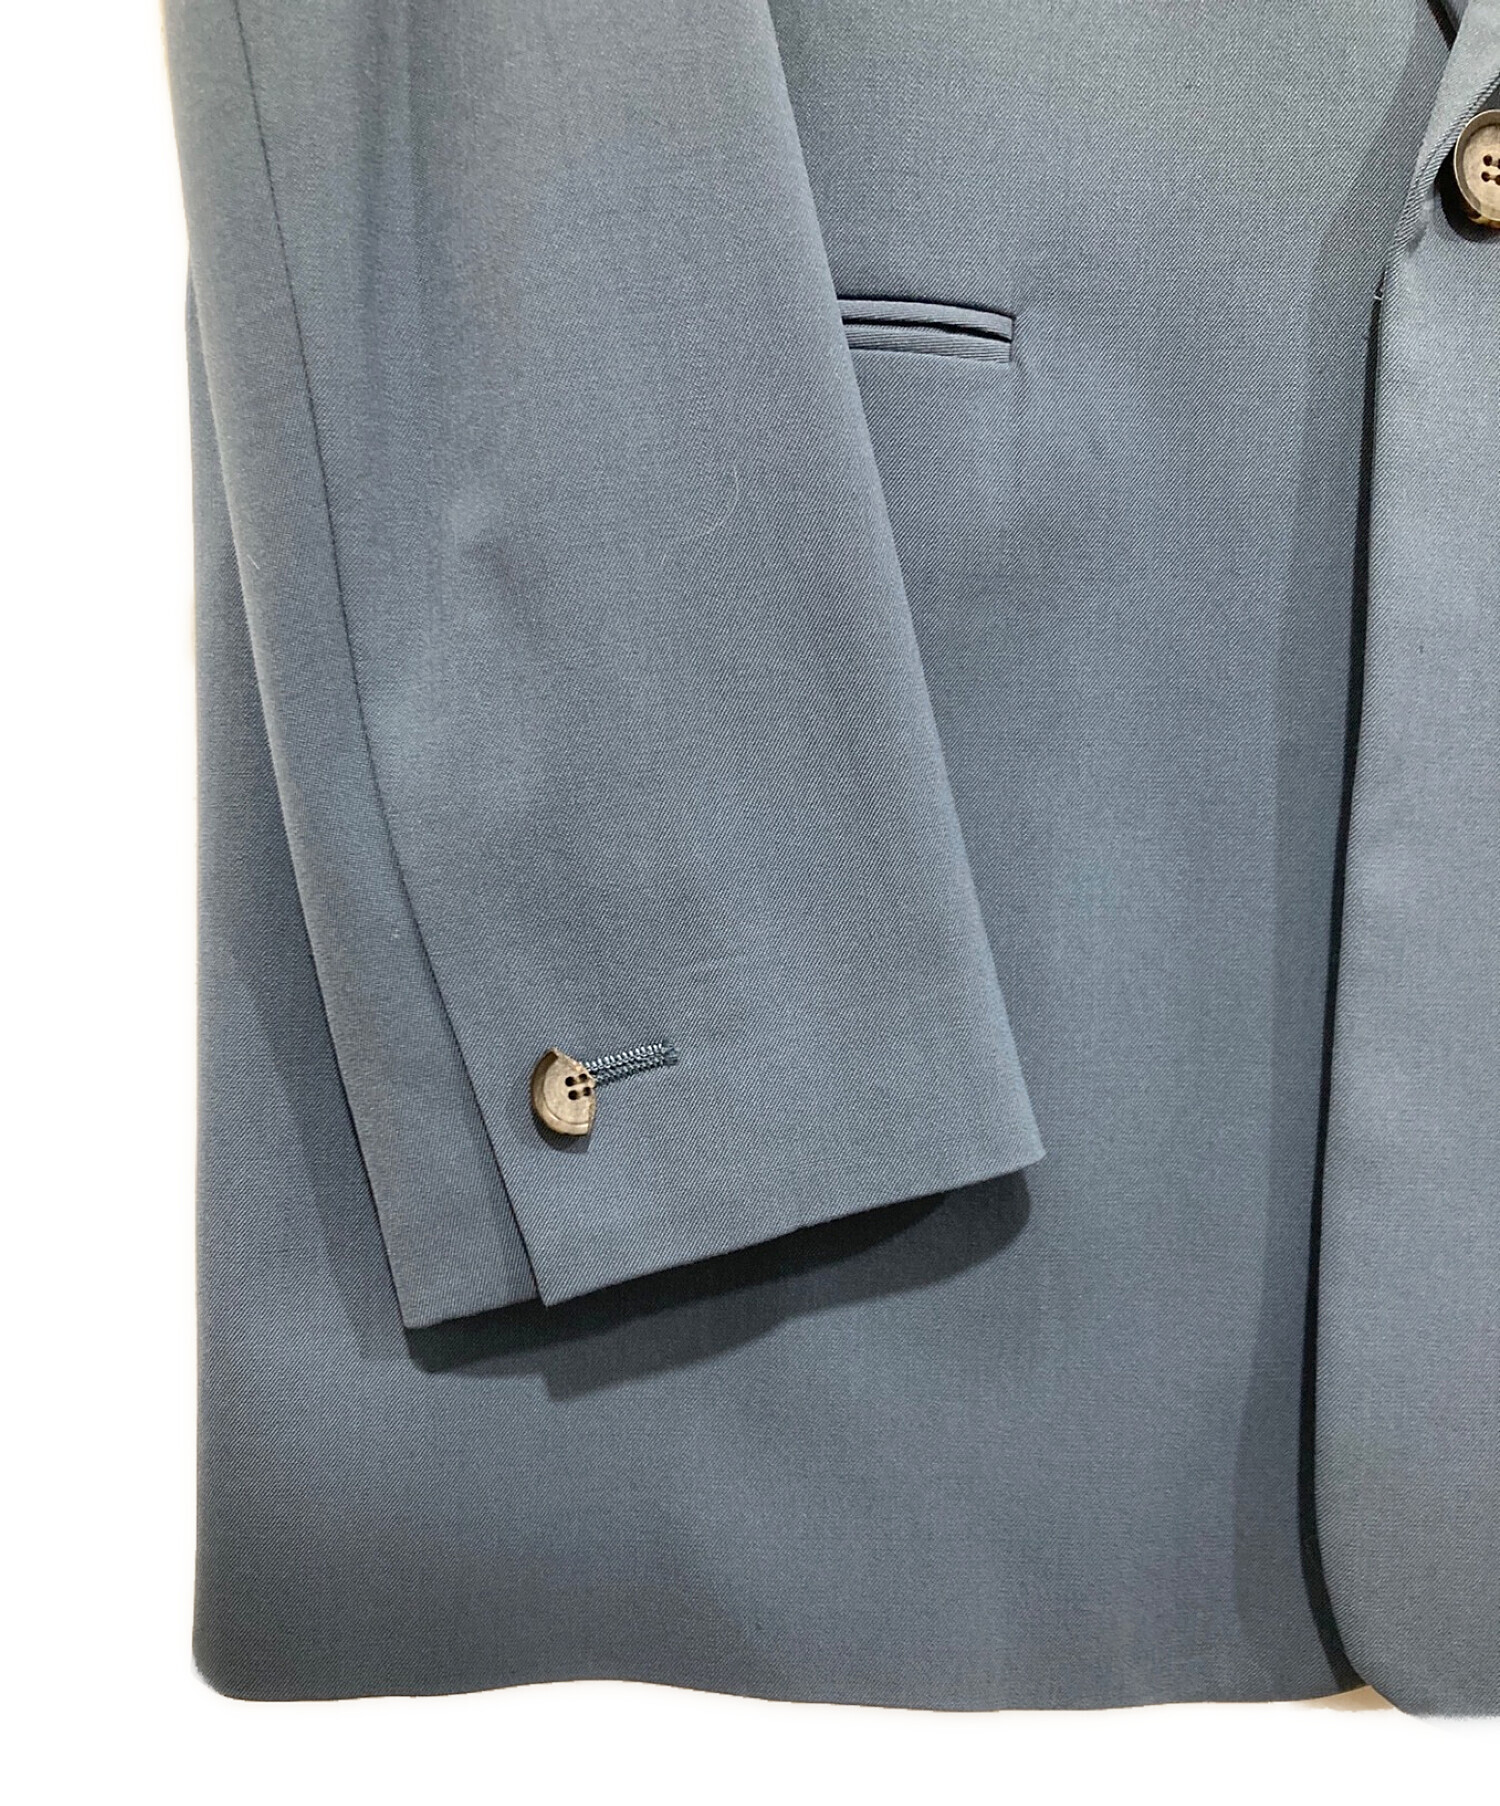 MIESROHE (ミースロエ) リラクシーウールテーラードジャケット ブルー サイズ:1